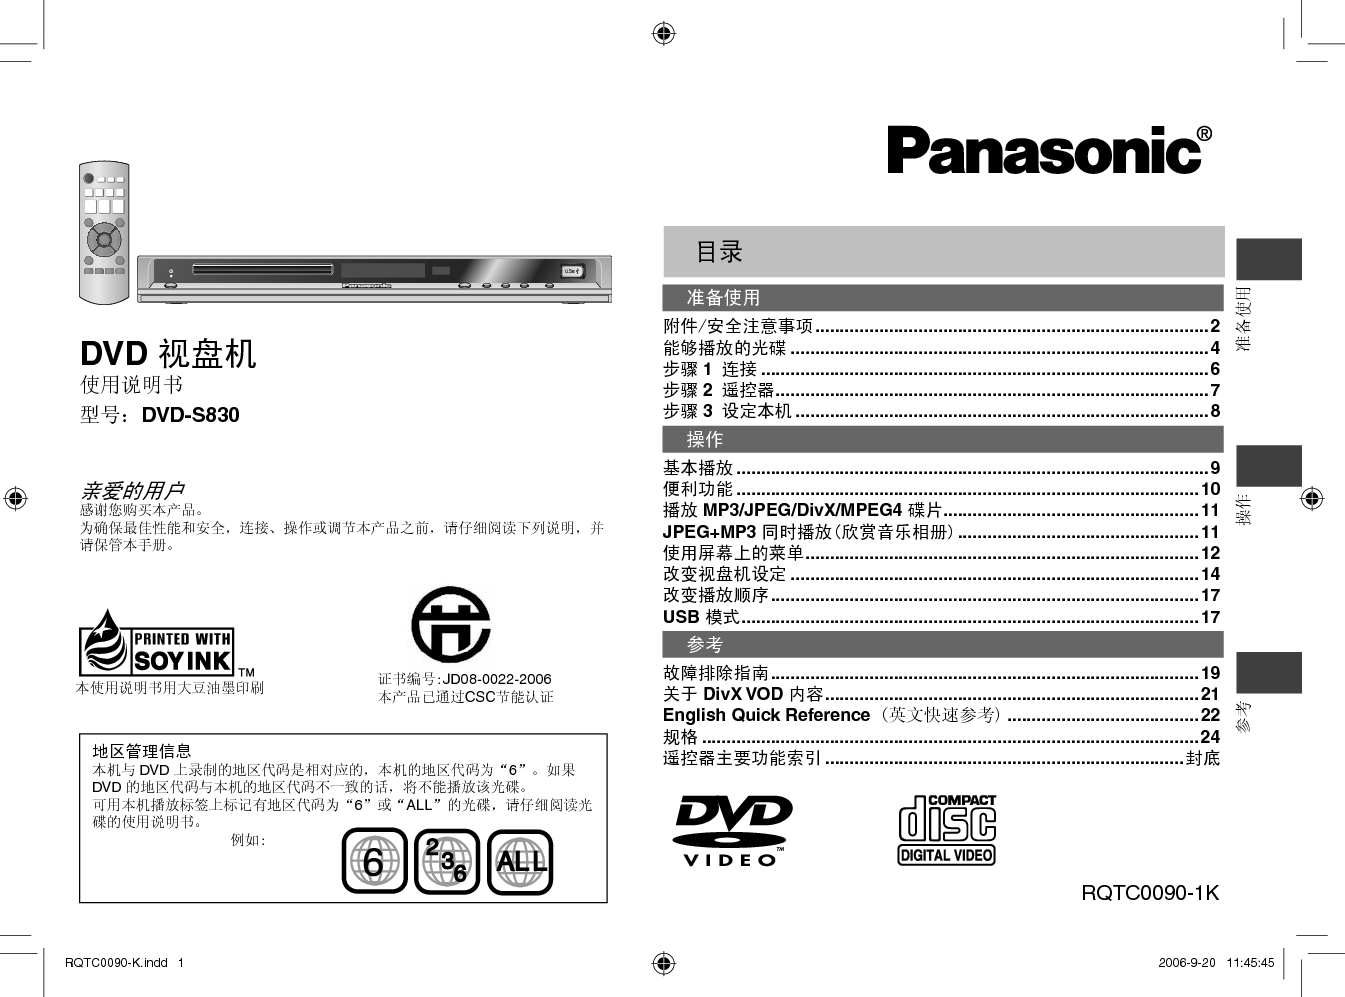 松下 Panasonic DVD-S830 说明书 封面